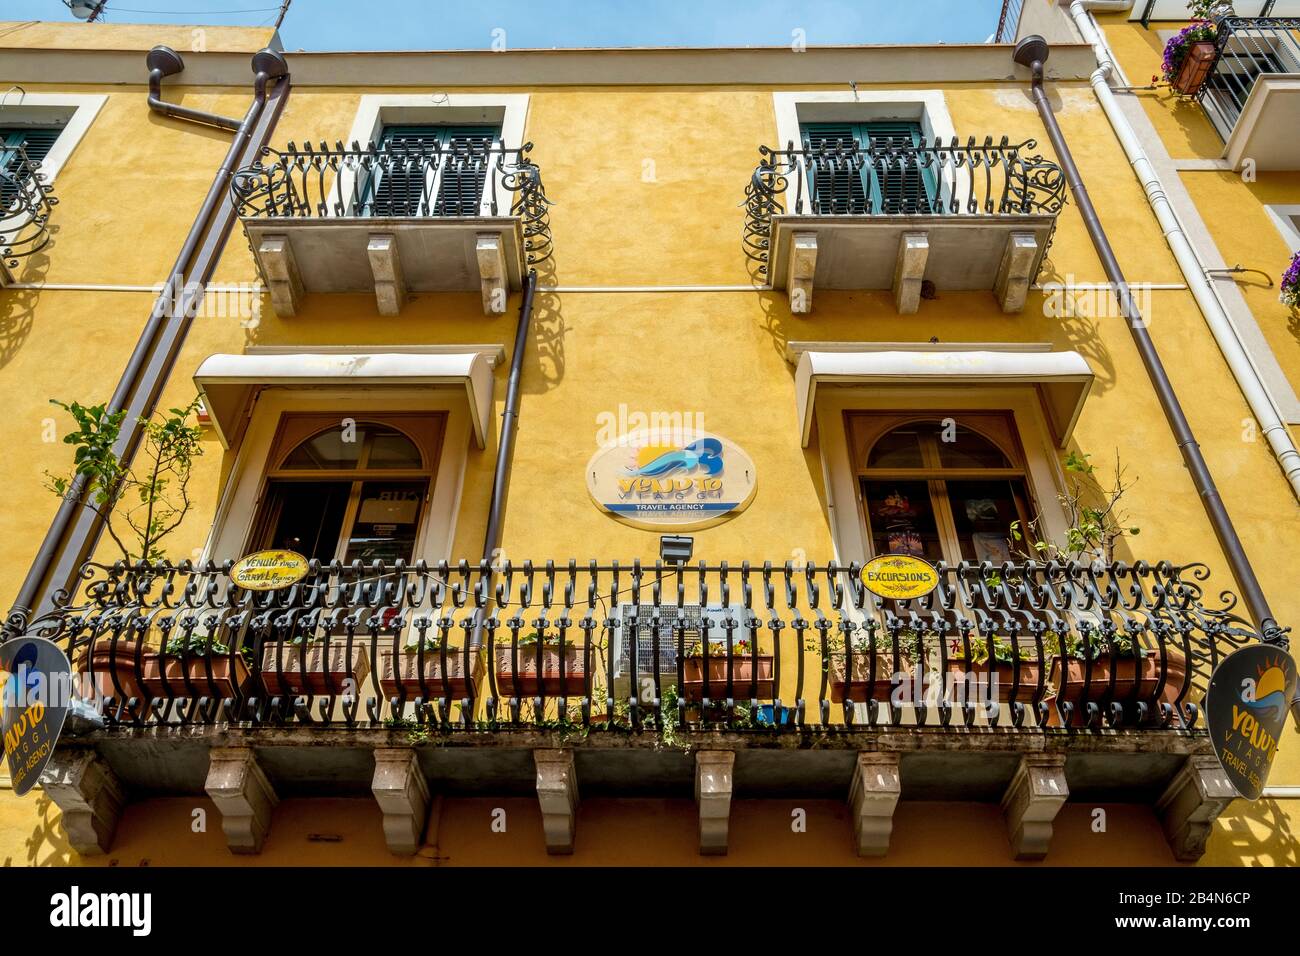 Vue colorée sur la maison avec balcon de l'agence de voyage Venuto Viaggi, Taormine, Italie du sud, Europe, Sicile, Italie Banque D'Images